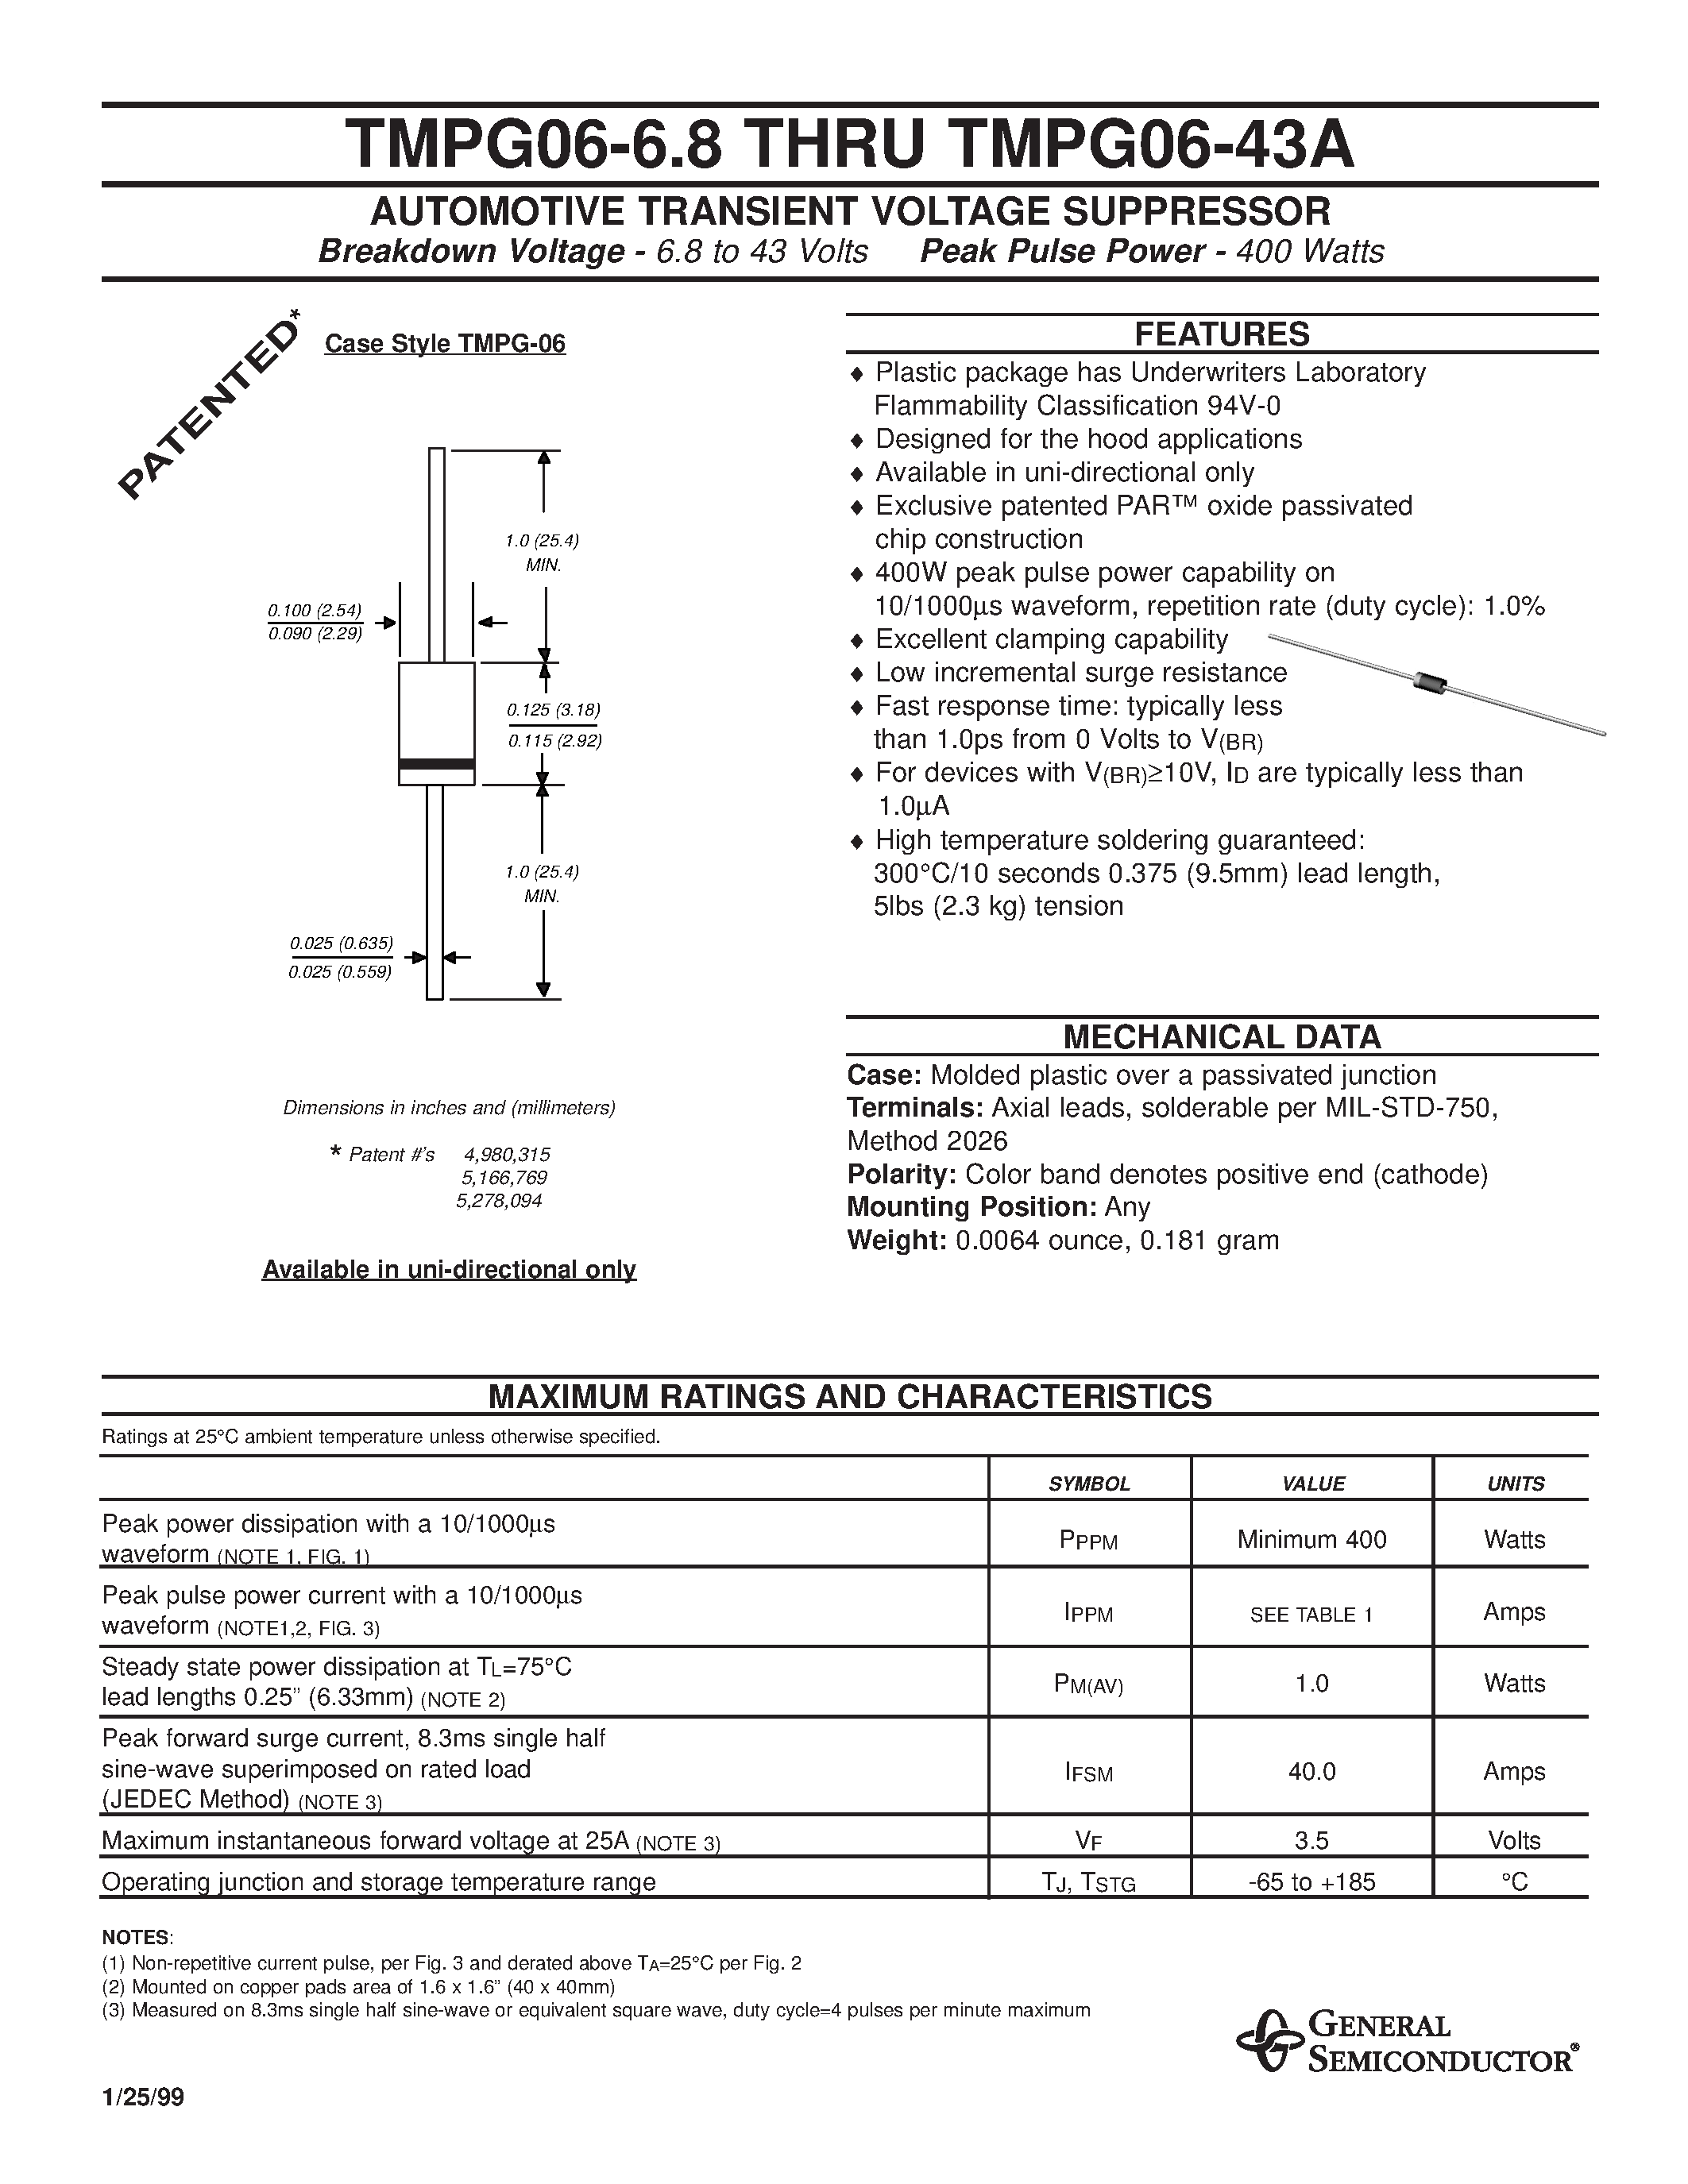 Datasheet TMPG06-9.1 - AUTOMOTIVE TRANSIENT VOLTAGE SUPPRESSOR page 1